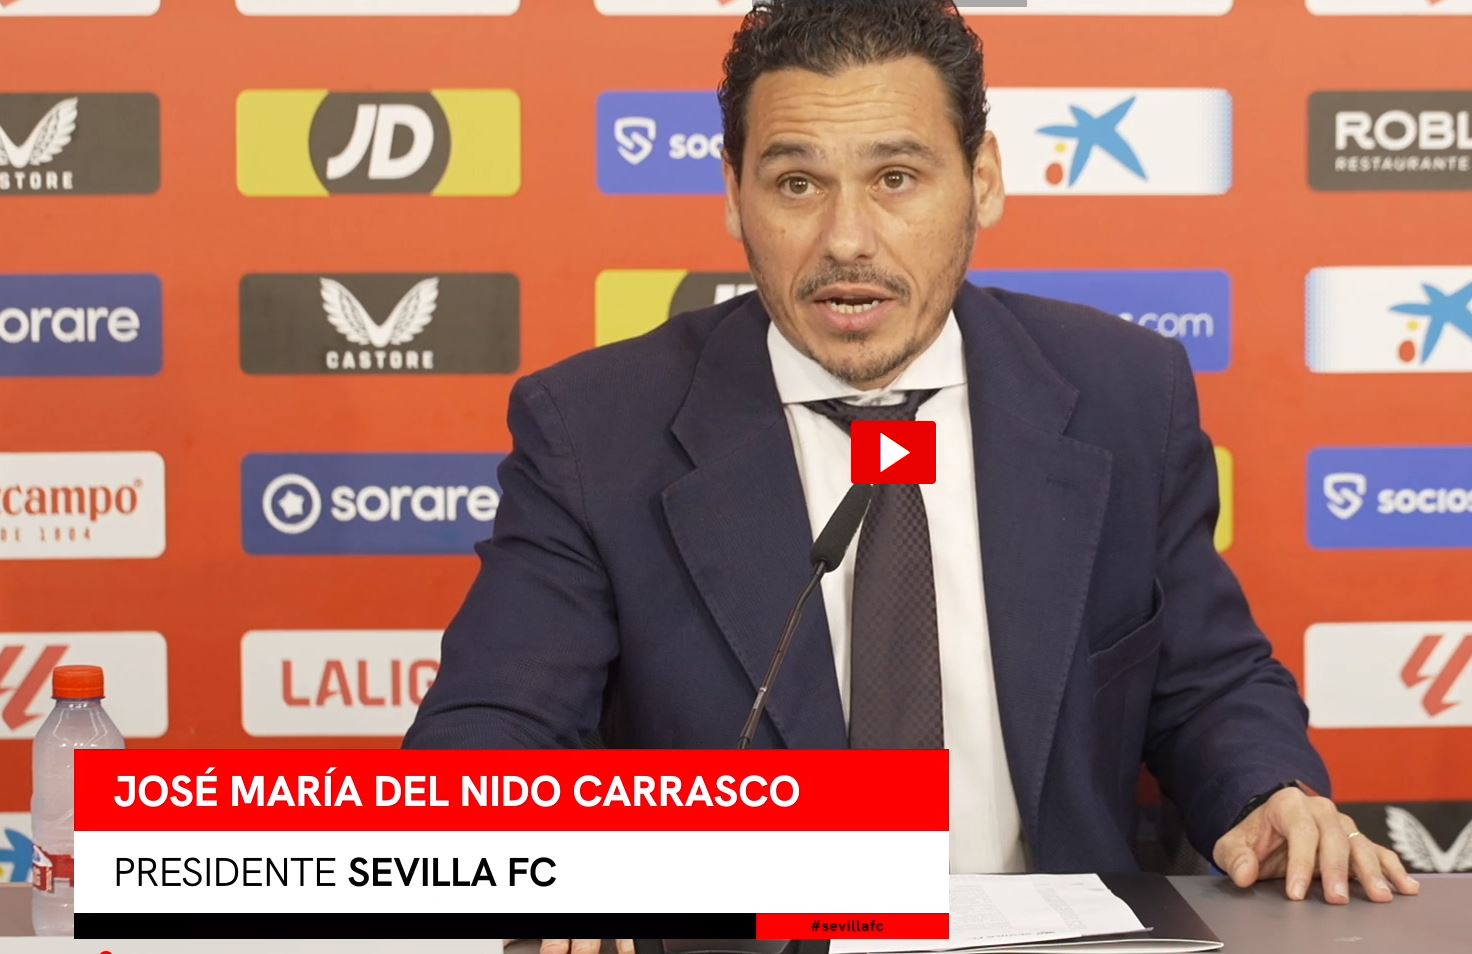 Jose Maria Del Nido Carrasco, Sevilla FC President announcing Scout Adviser, the new AI tool. Source: Sevilla FC